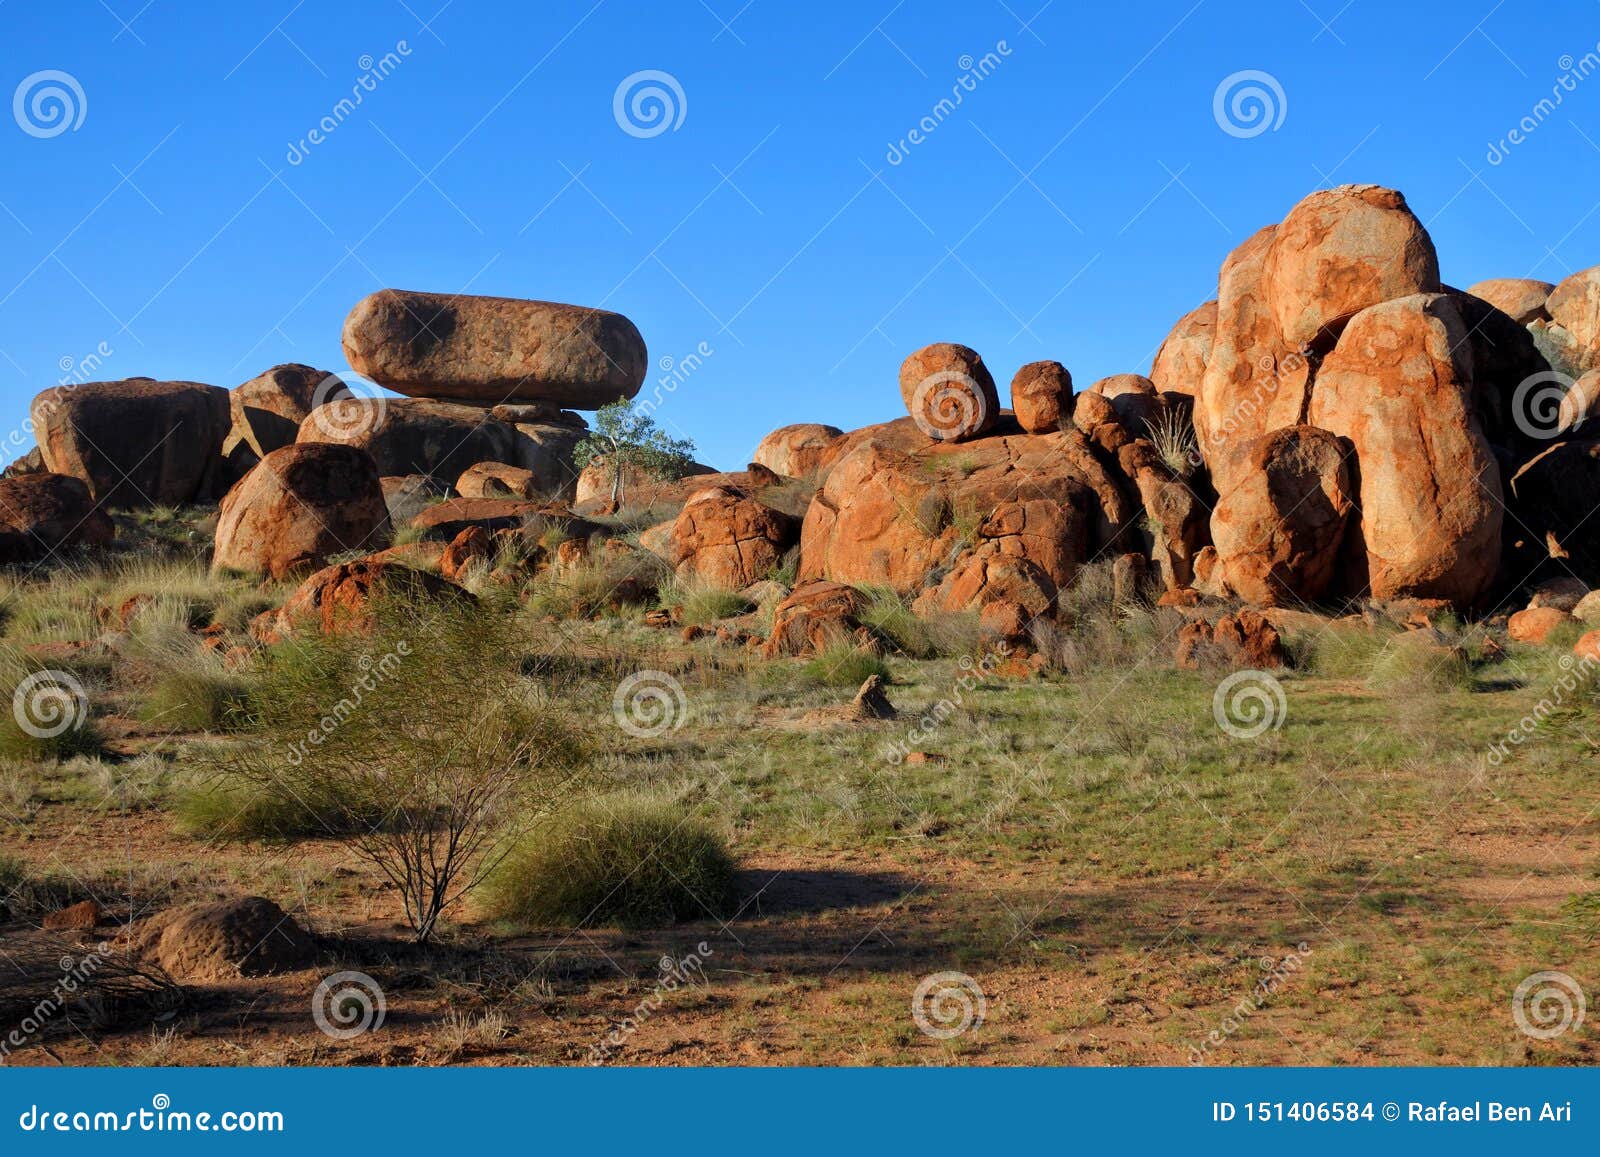 devils marbles karlu karlu in the northern territory, australia